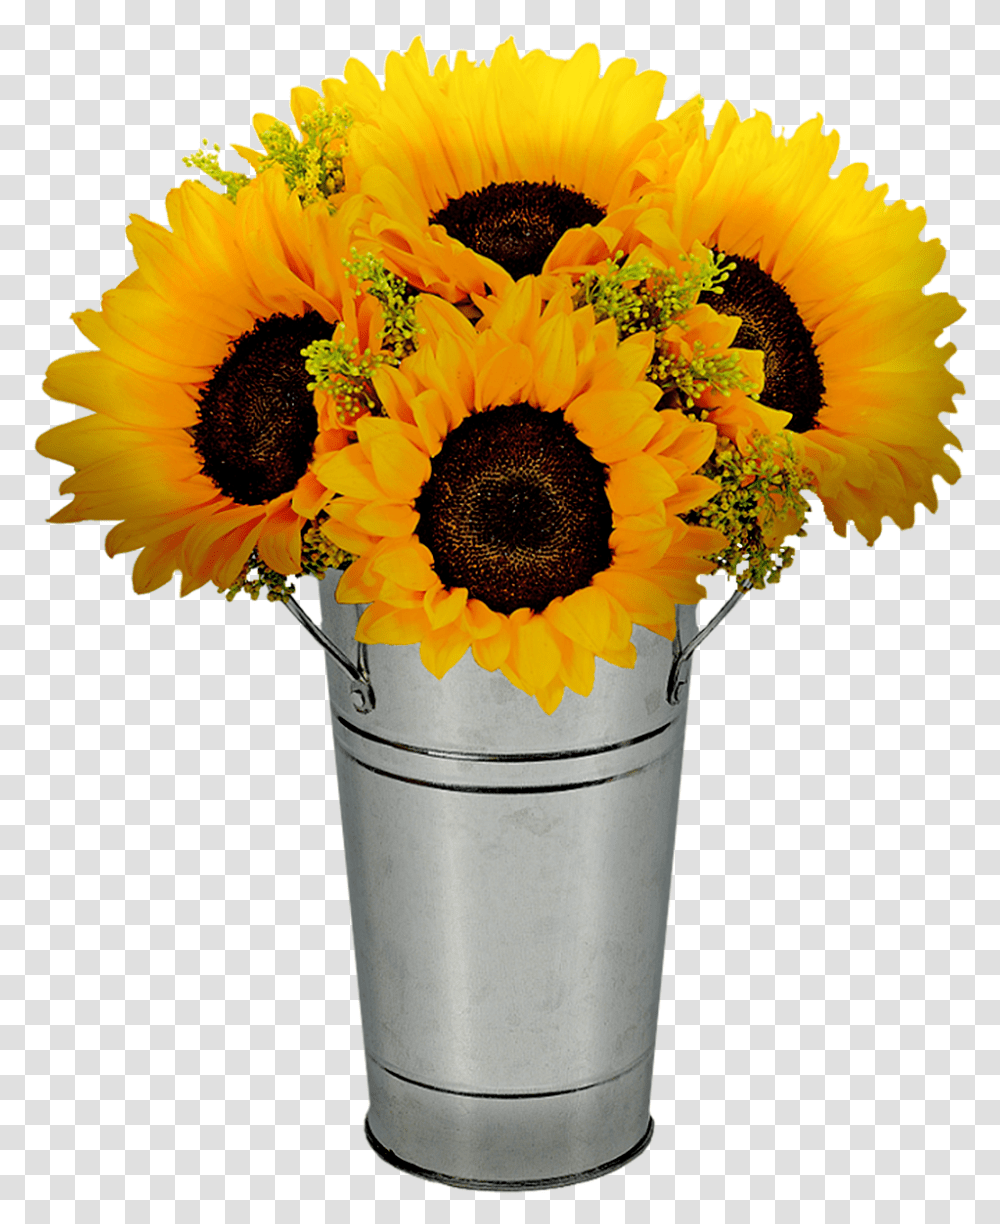 Sunflowers In Pot Flower Free Image On Pixabay, Plant, Blossom, Flower Arrangement, Jar Transparent Png